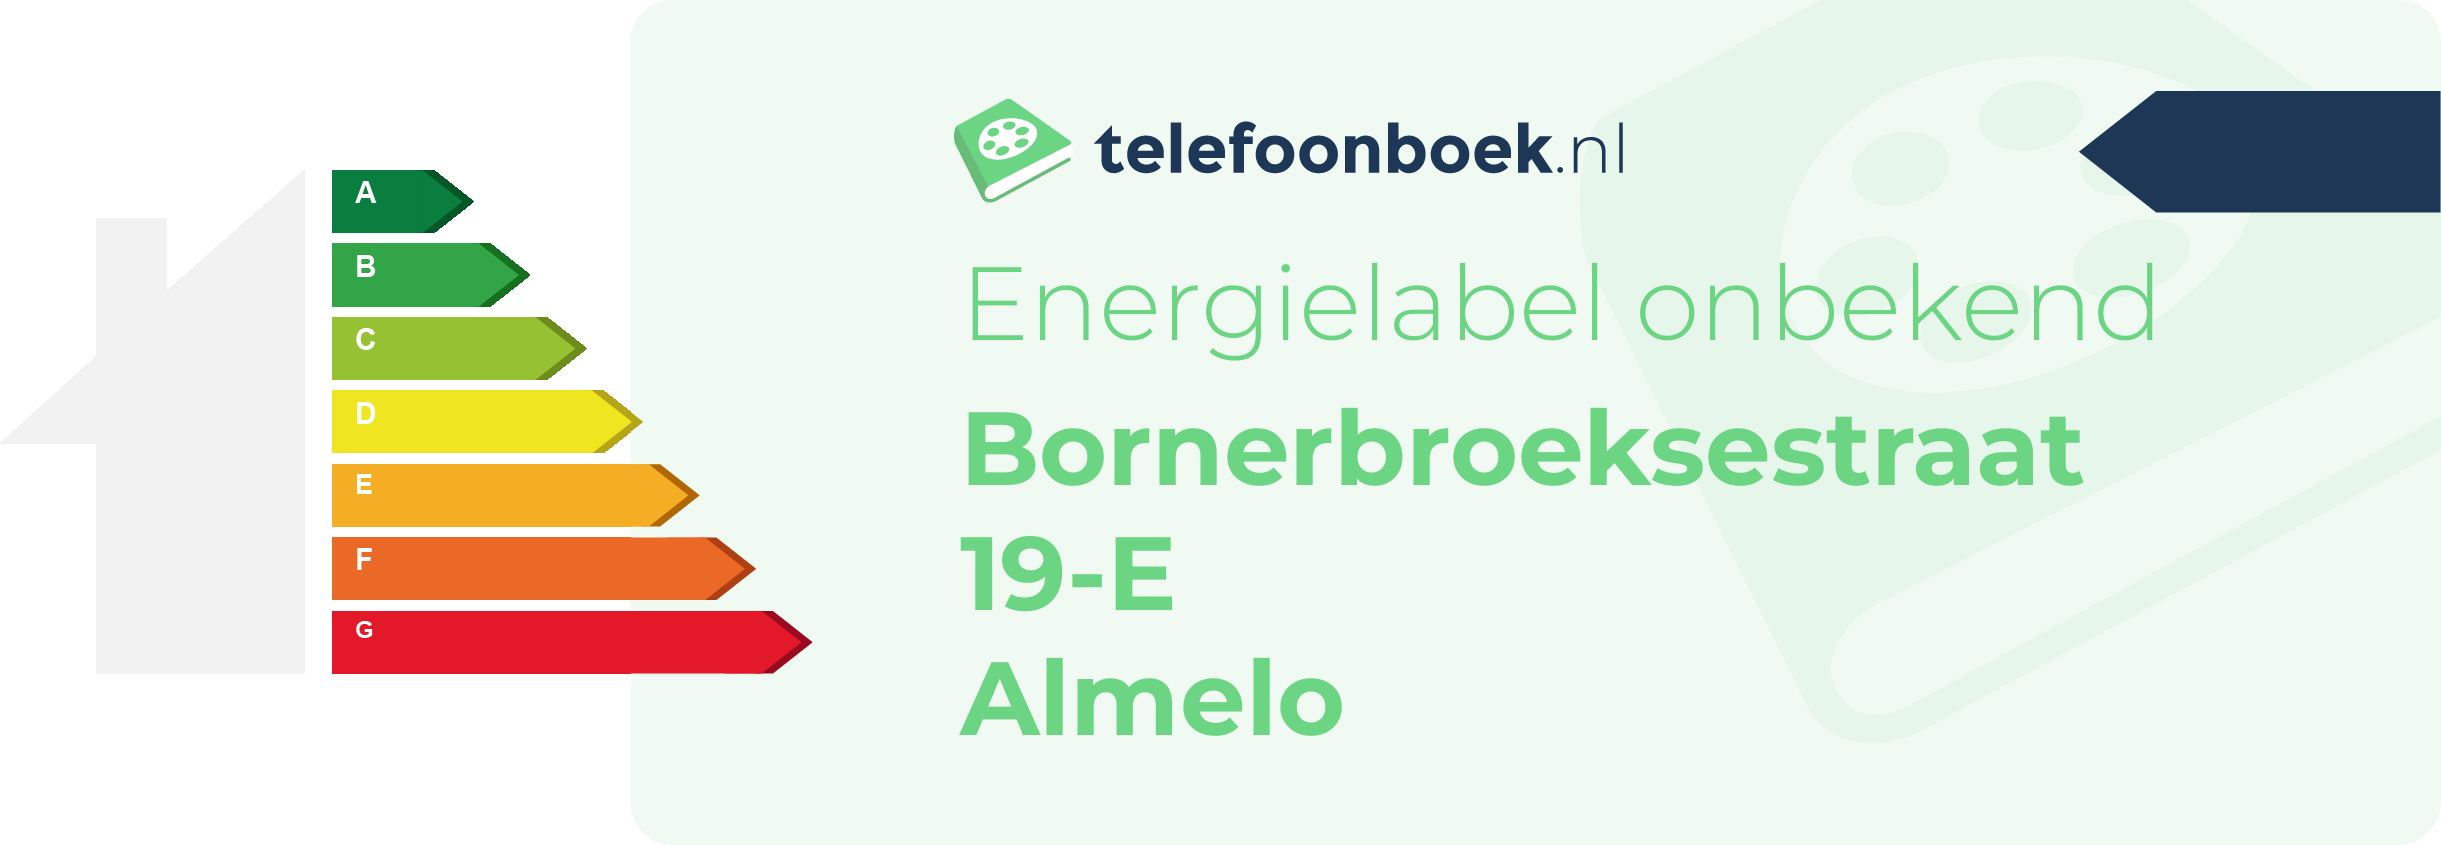 Energielabel Bornerbroeksestraat 19-E Almelo